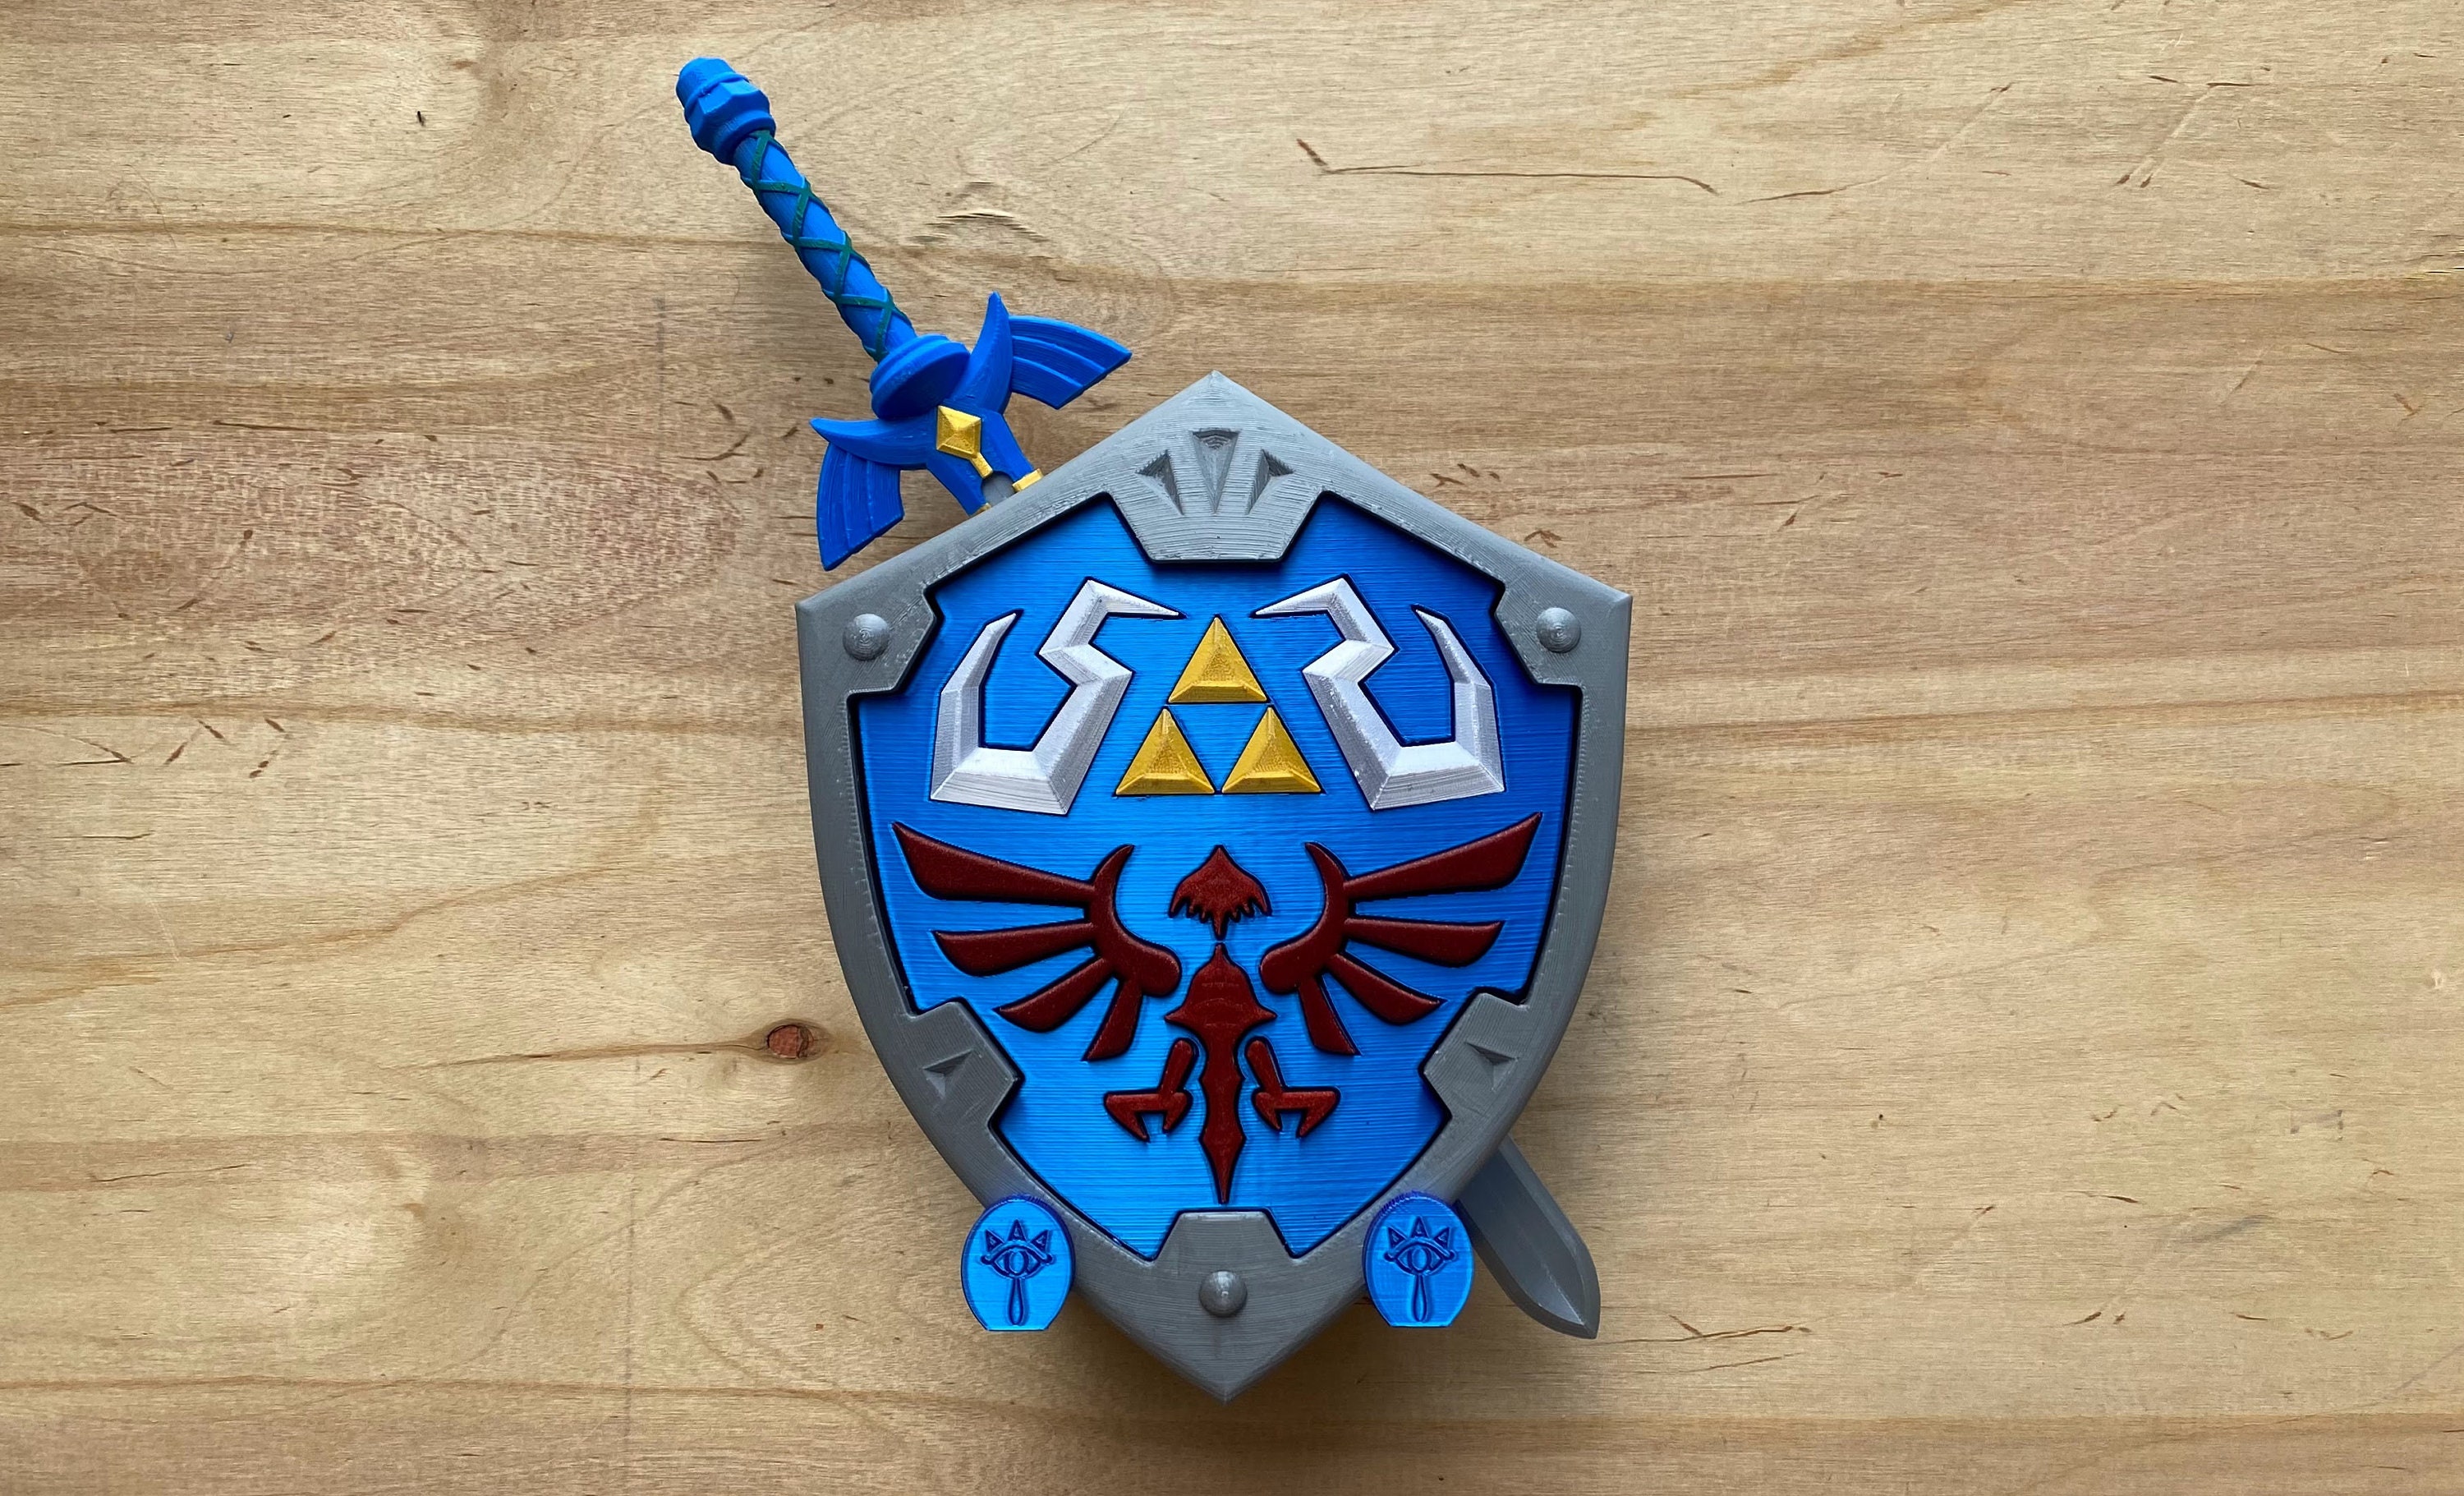 3D Printing My Very Own Master Sword! - Zelda Dungeon